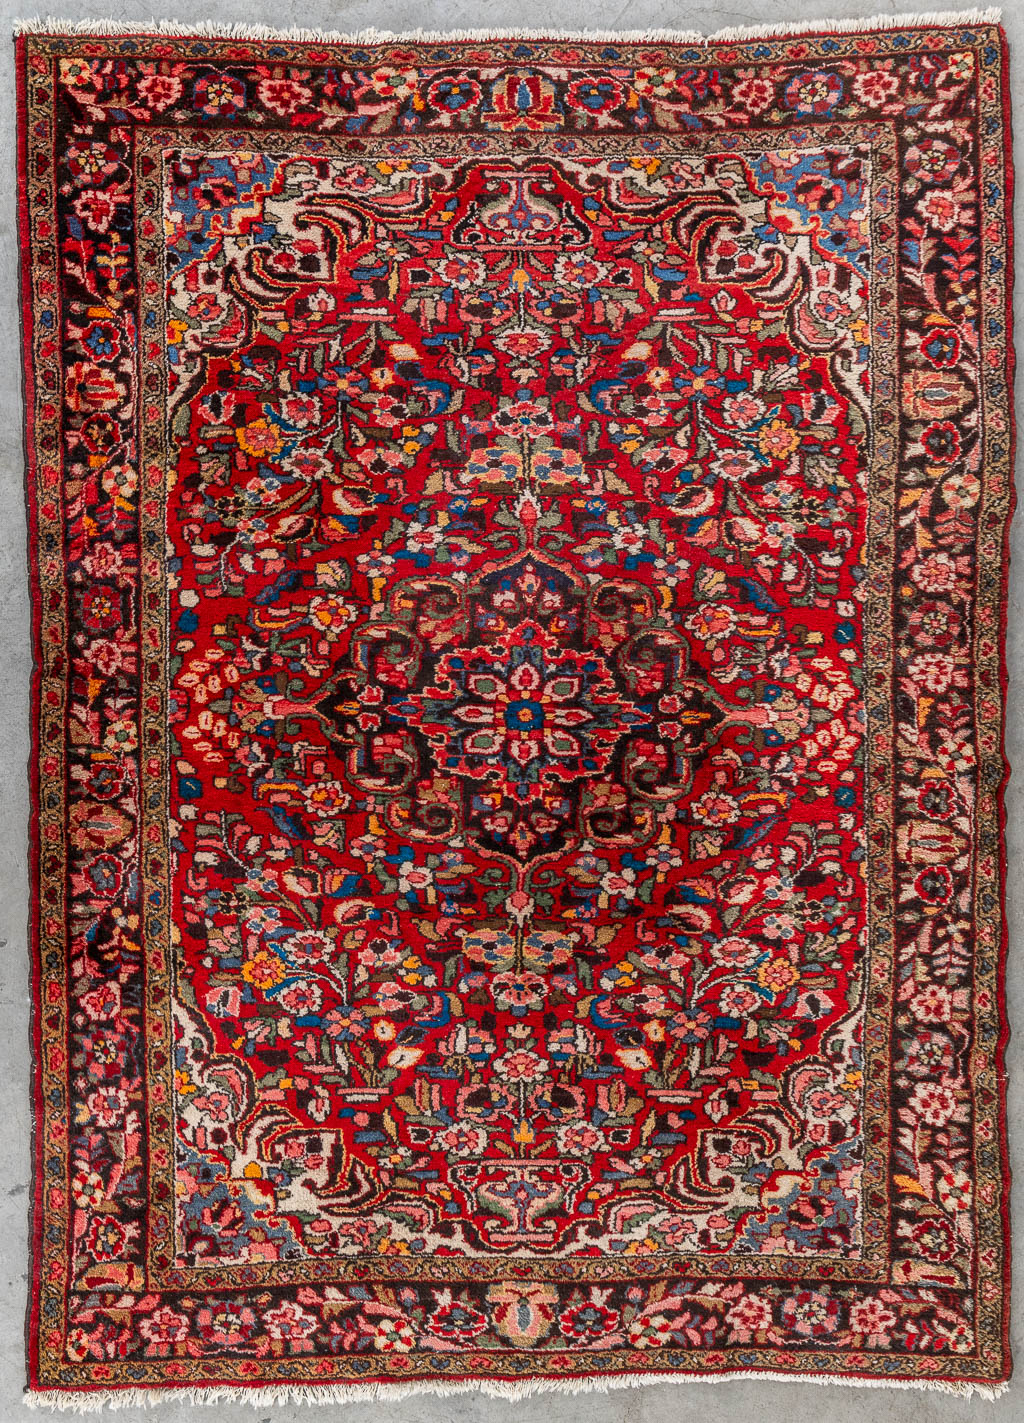 Lot 208 Een Oosters, handgeknoopt tapijt, Keshan. (L:217 x W:158 cm)